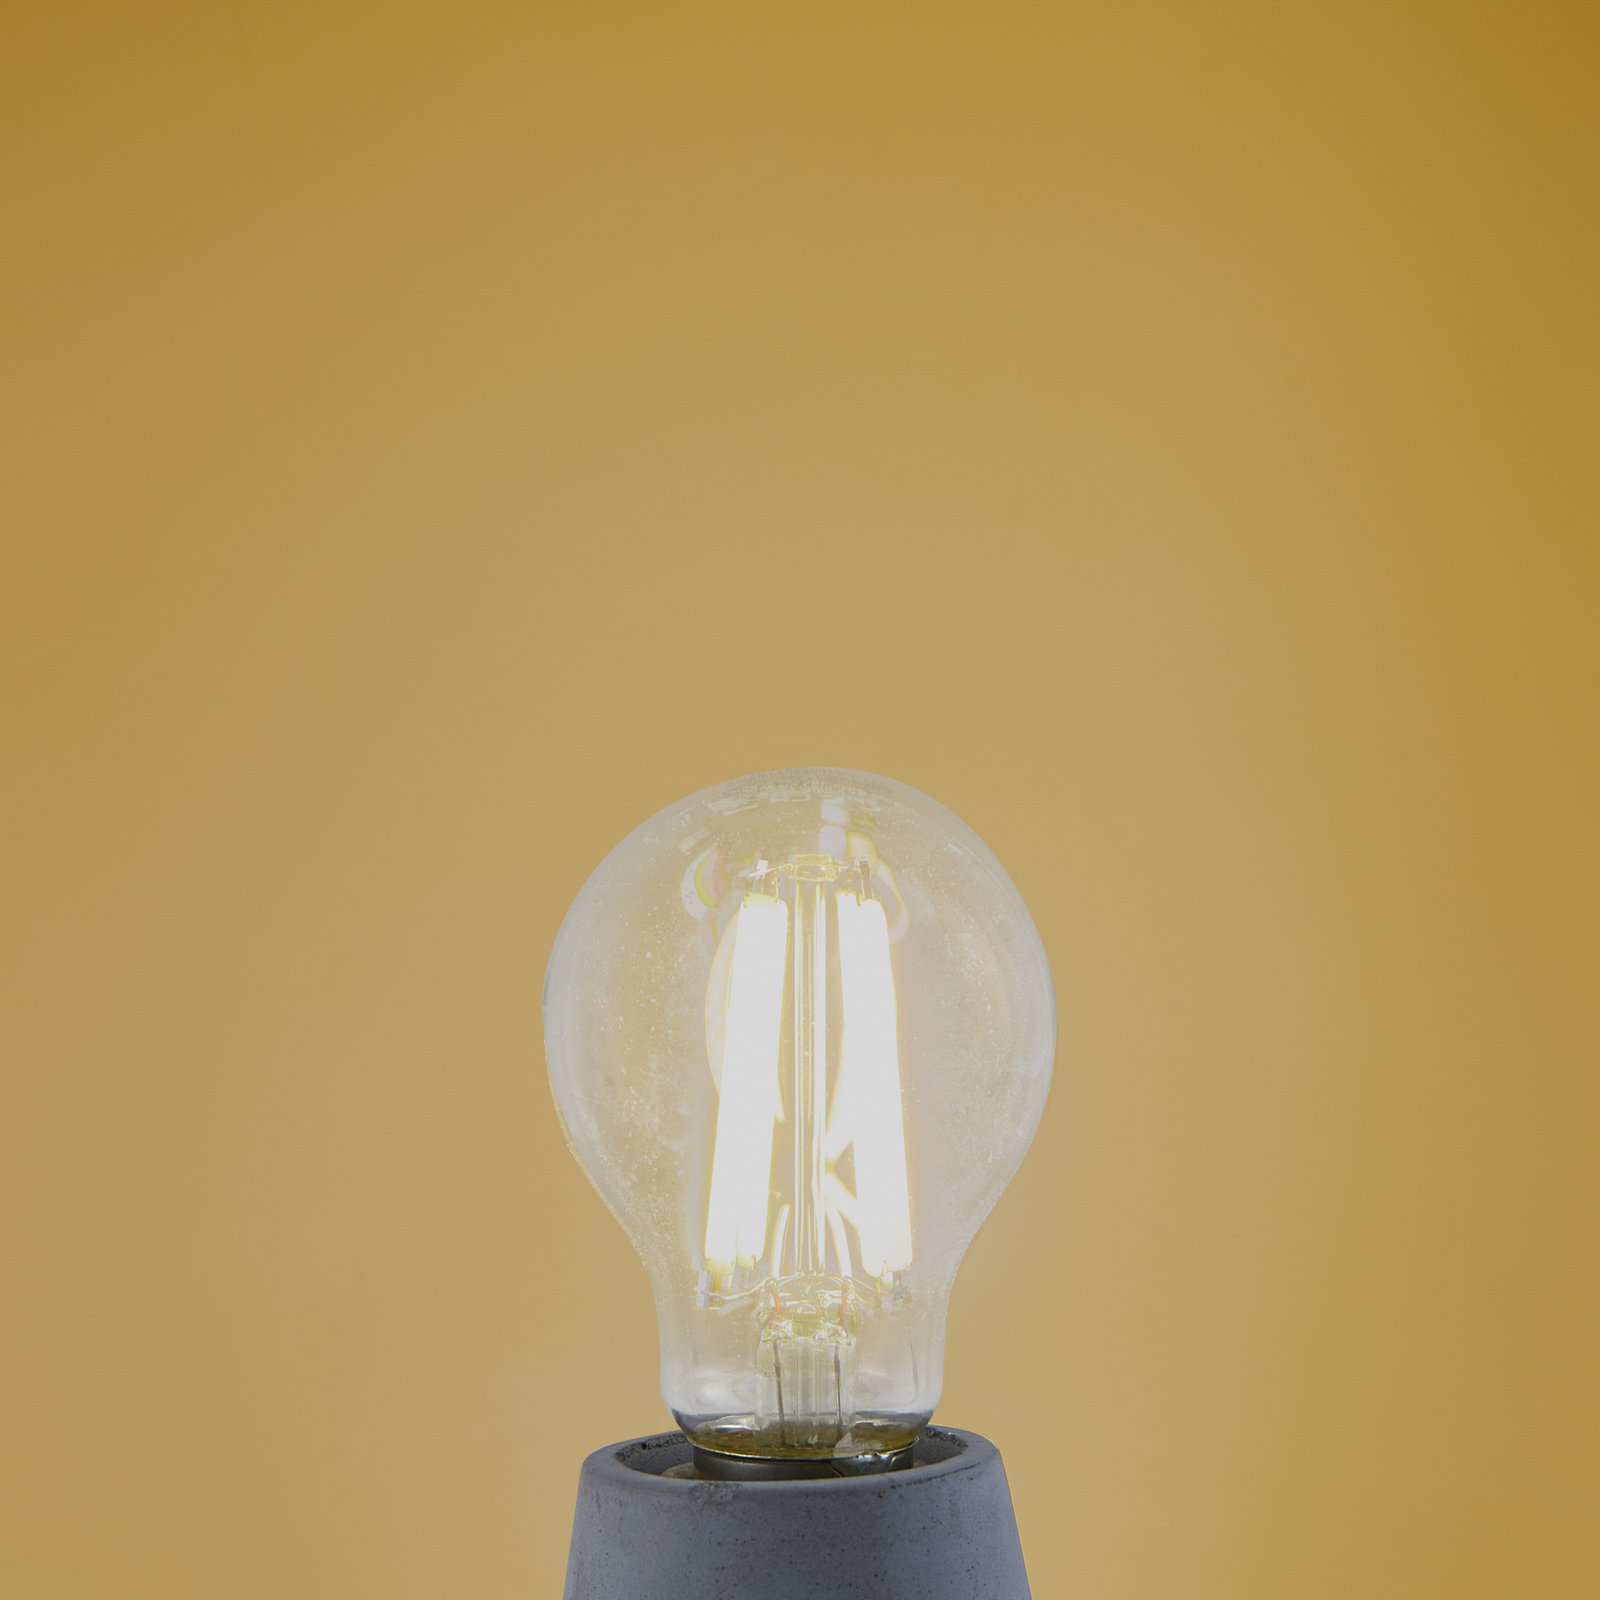 LED žiarovka, číra, E27, 7,2 W, 3000K, 1521 lm